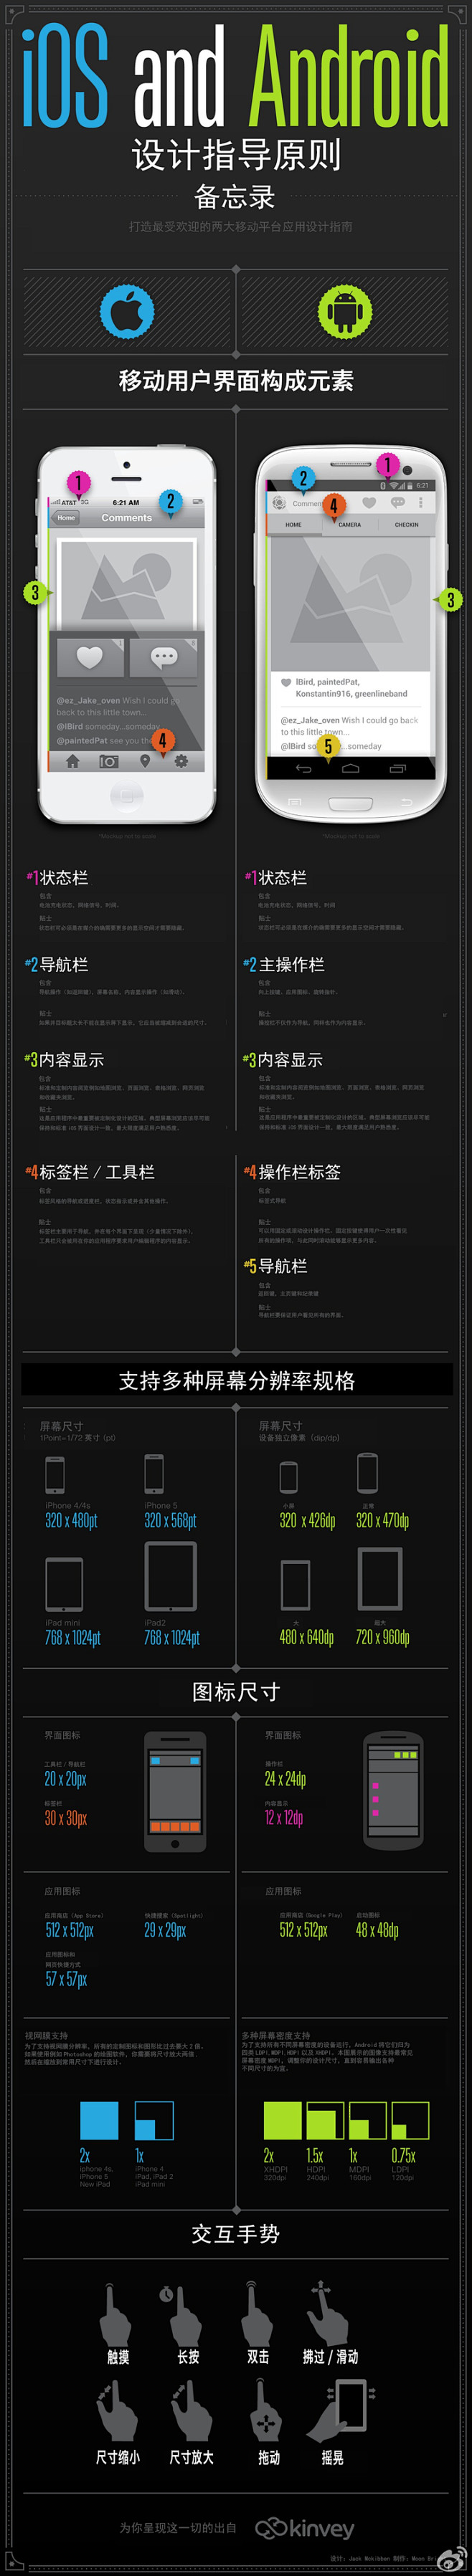 IOS 安卓设计指导原则 | 视觉中国